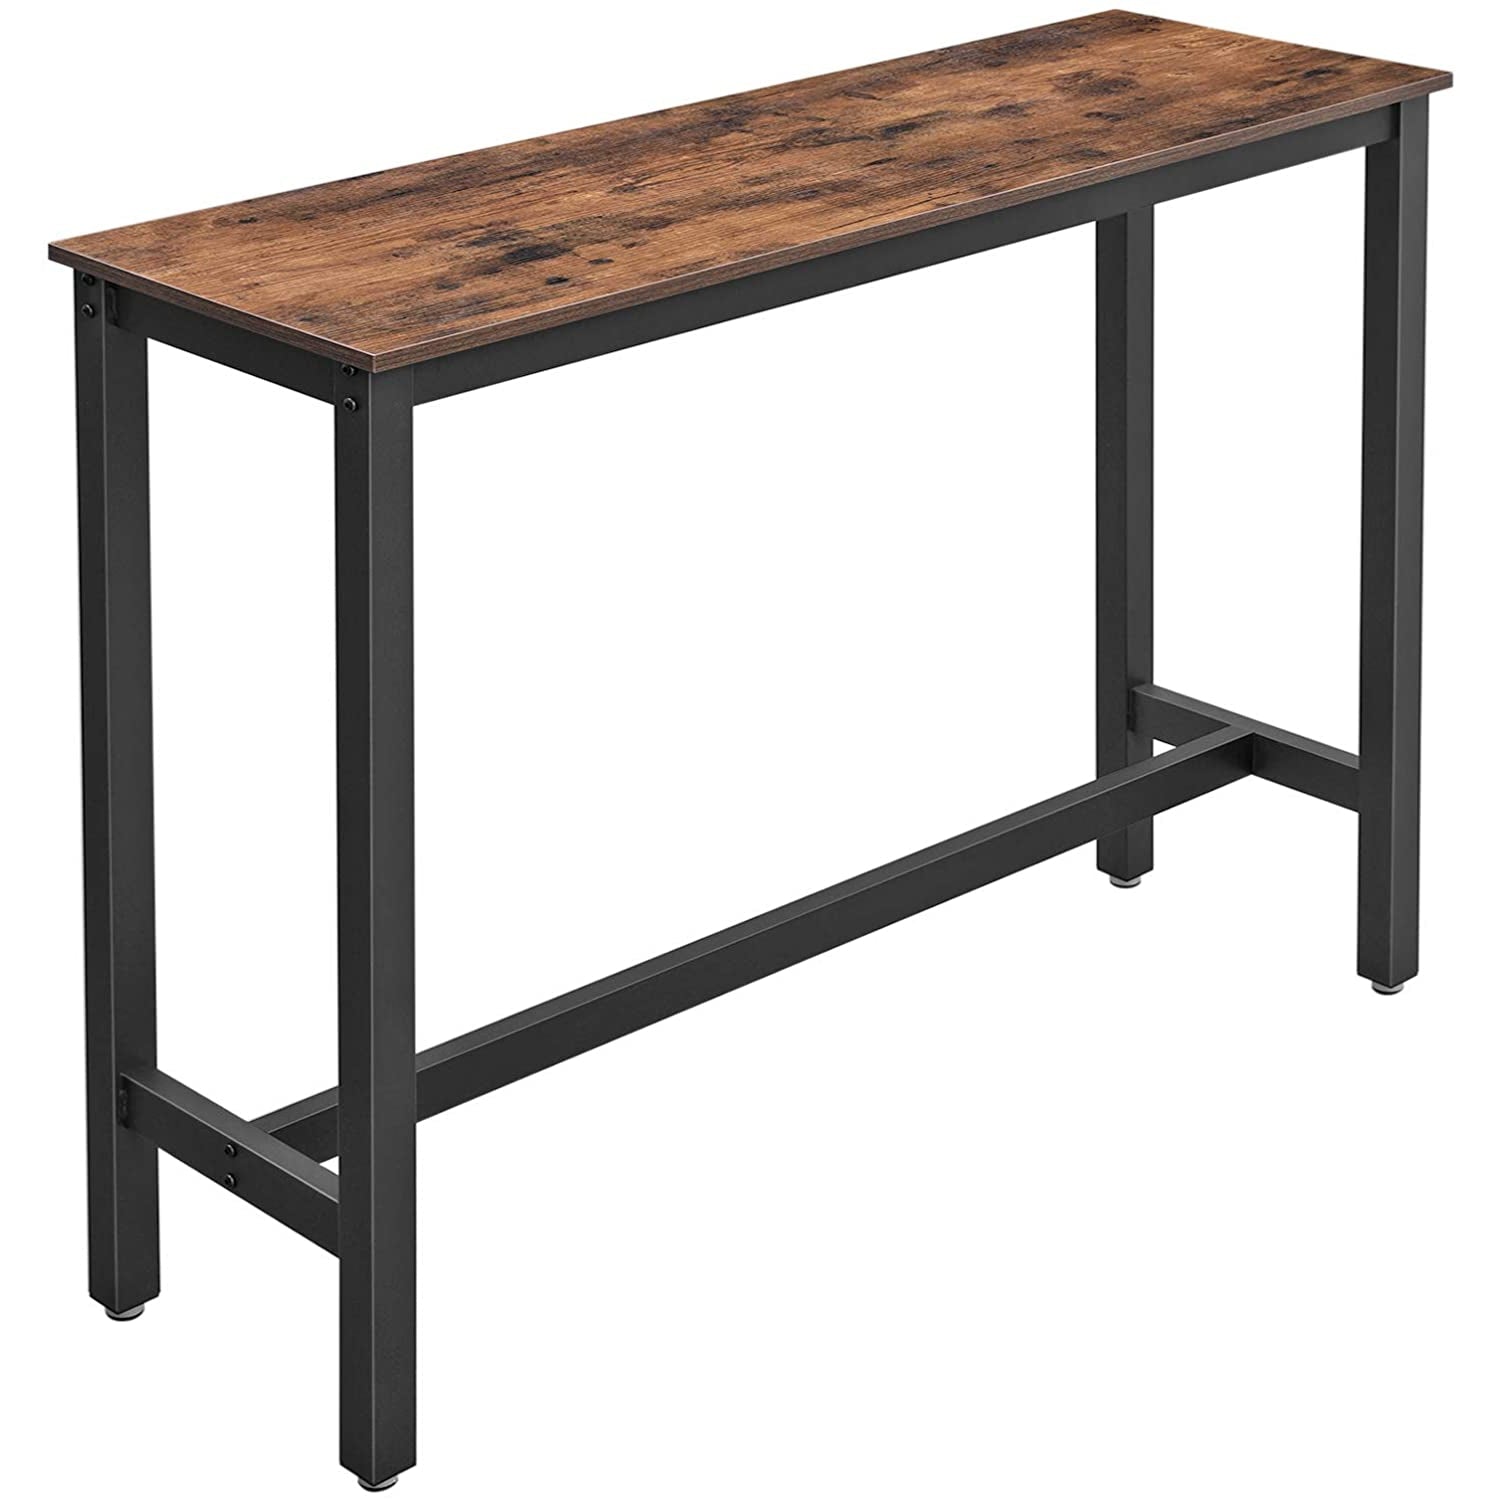 Table de bar en bois de Nancy - Table de cuisine vintage - Tables de bar de cuisine - Bureau haut - Industriel - Bois & Métal - 120 x 40 x 100 cm